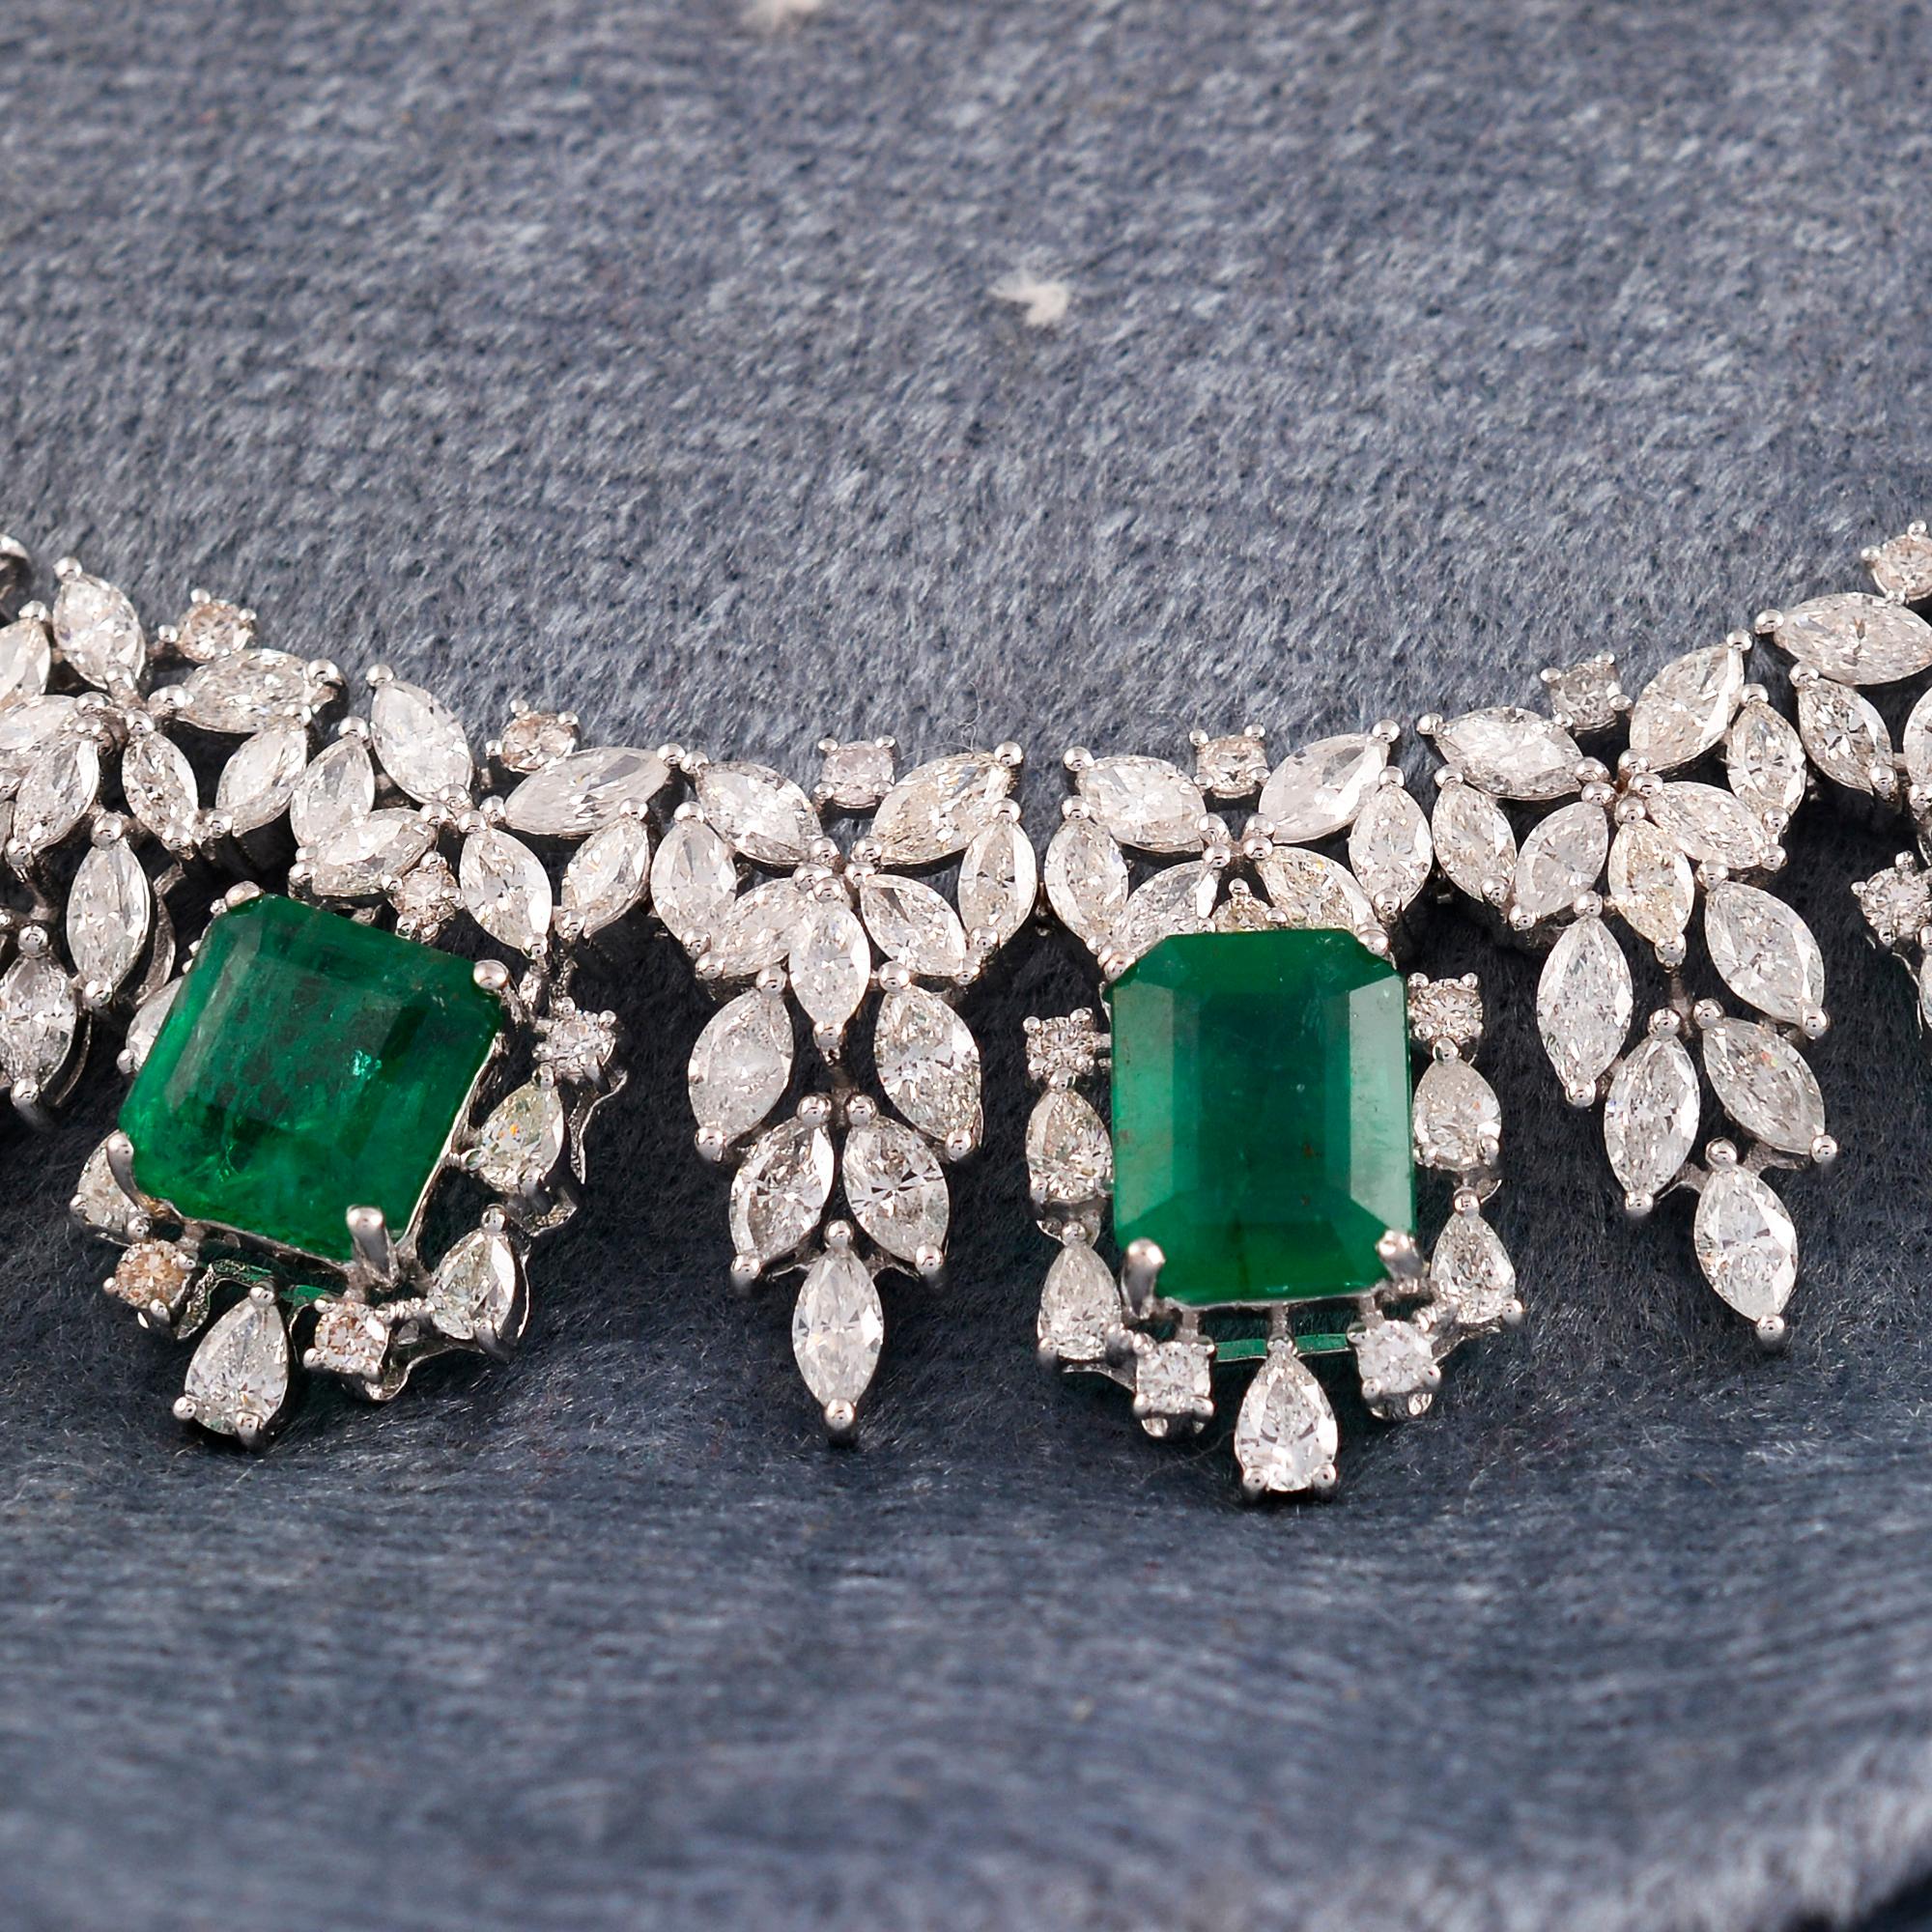 Schmücken Sie sich mit der bezaubernden Schönheit dieser natürlichen Smaragd-Edelstein-Halskette mit Diamanten. Dieses exquisite Schmuckstück aus 14-karätigem Weißgold zeigt einen faszinierenden Smaragdstein, der von schimmernden Diamanten begleitet